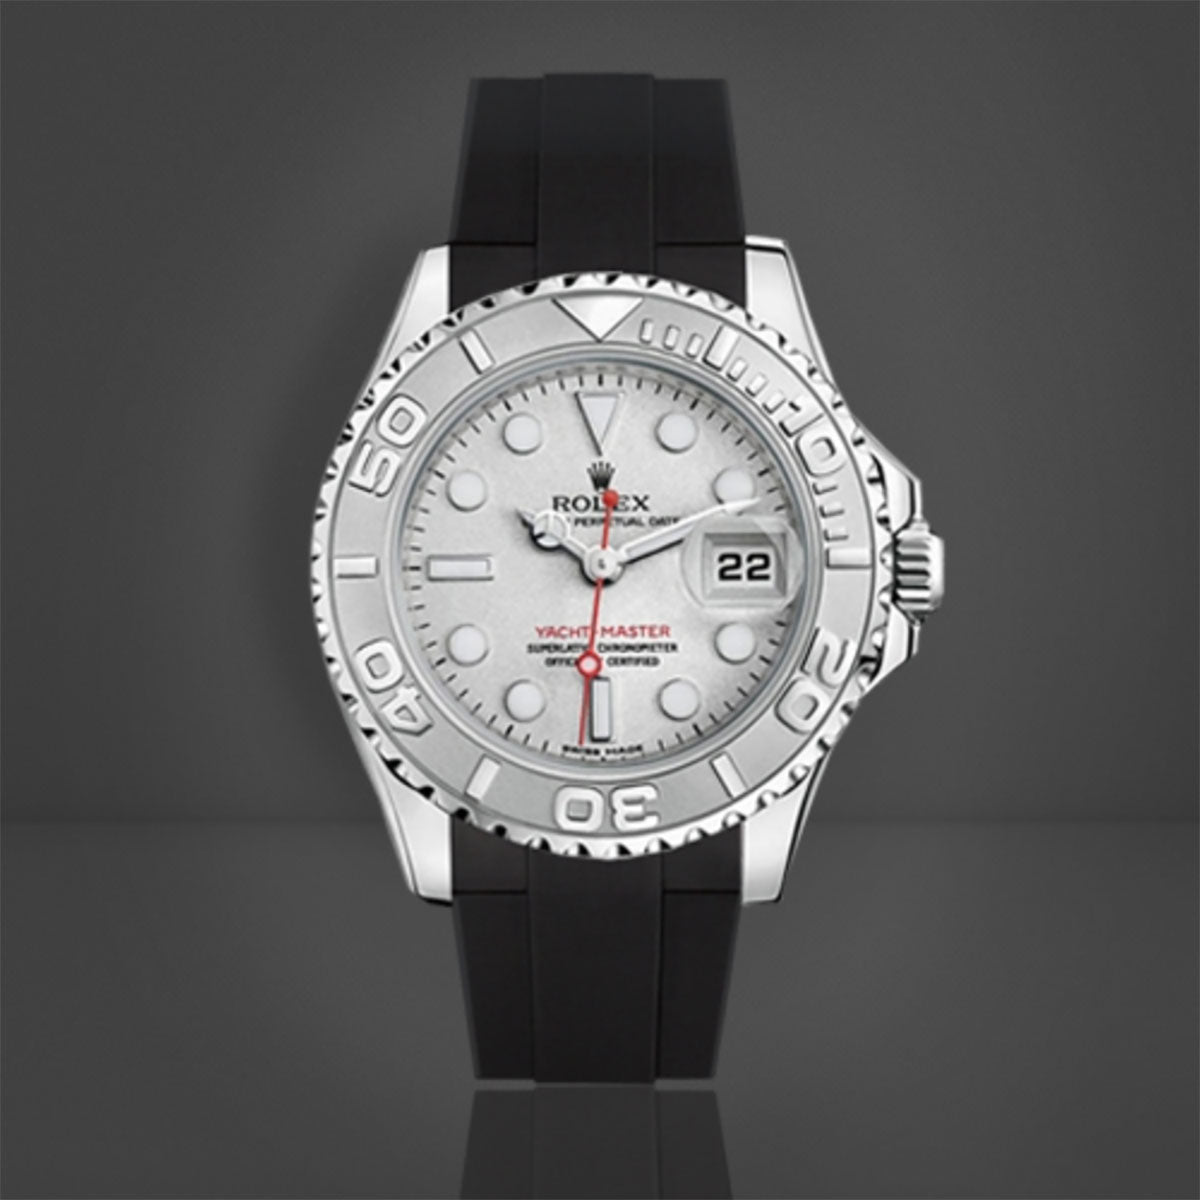 Rolex - Rubber B - Bracelet caoutchouc pour Yachtmaster 35mm - Série boucle ardillon - watch band leather strap - ABP Concept -